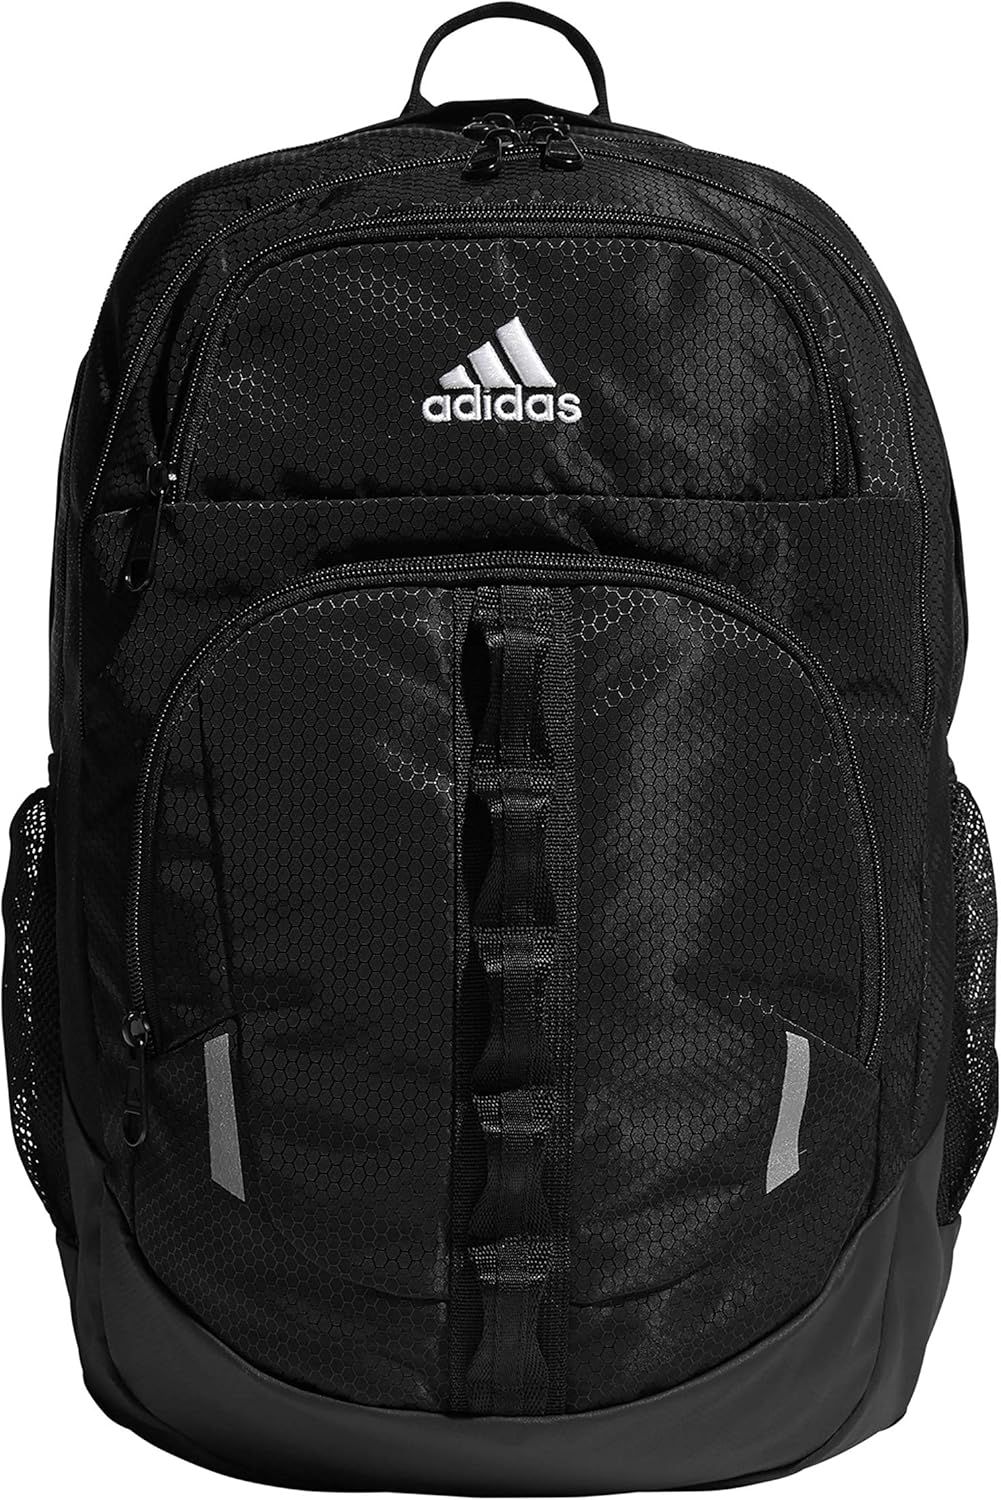 adidas Unisex Prime Backpack, Black/White, One Size | Amazon (US)